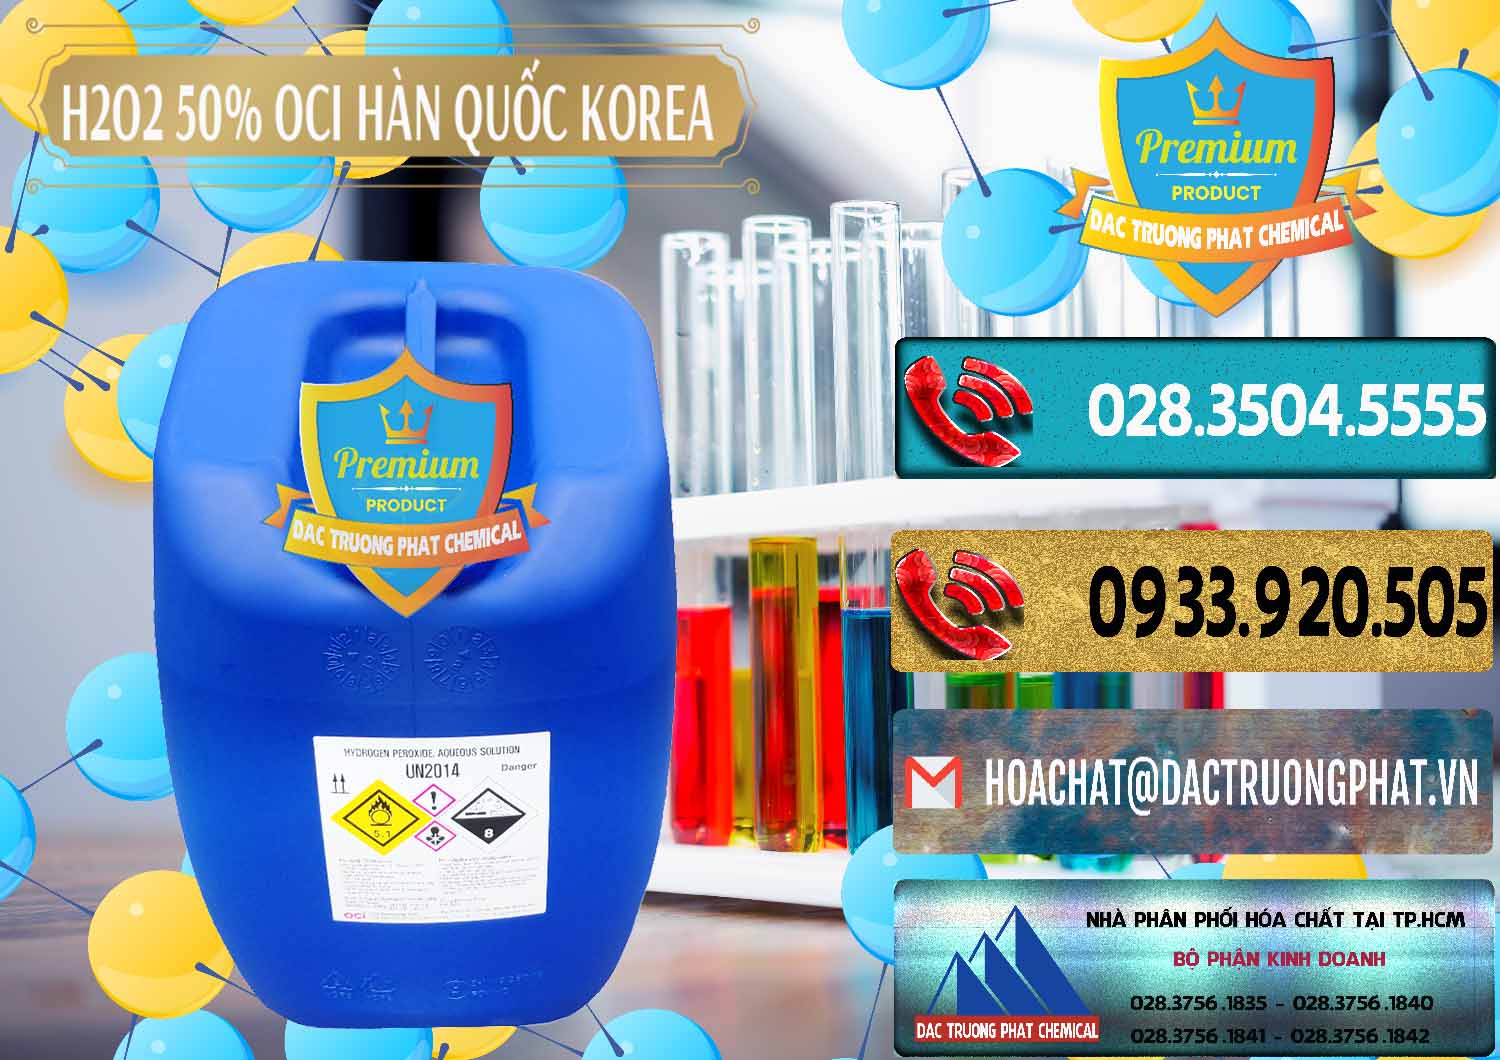 Công ty chuyên phân phối và bán H2O2 - Hydrogen Peroxide 50% OCI Hàn Quốc Korea - 0075 - Phân phối - kinh doanh hóa chất tại TP.HCM - hoachatdetnhuom.com